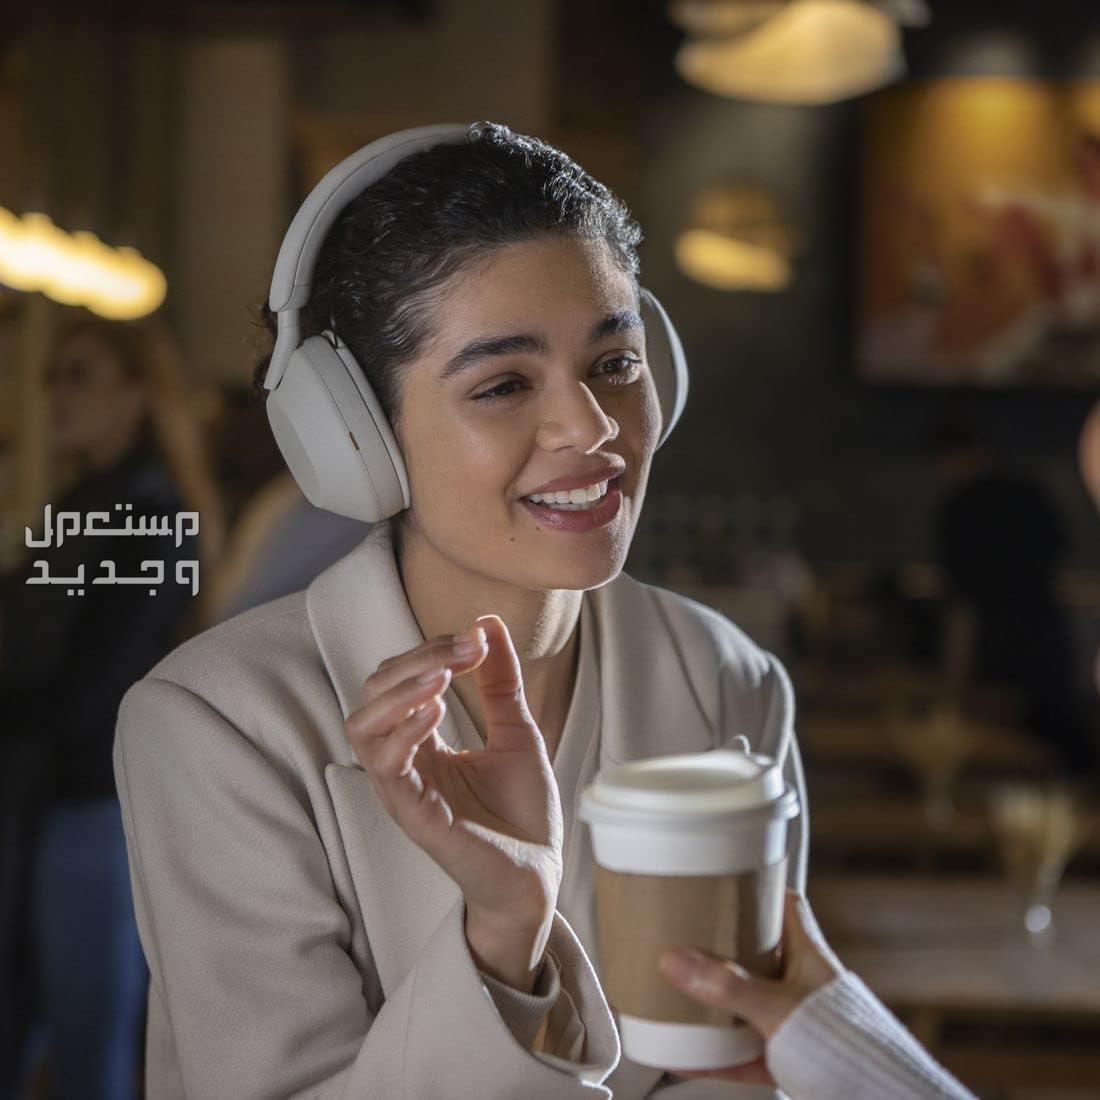 سماعة سوني 5 بتقنية إلغاء الضوضاء المطوّرة  السعر والمميزات الفائقة في الإمارات العربية المتحدة سماعة سوني 5 جودة مكالمات رائدة